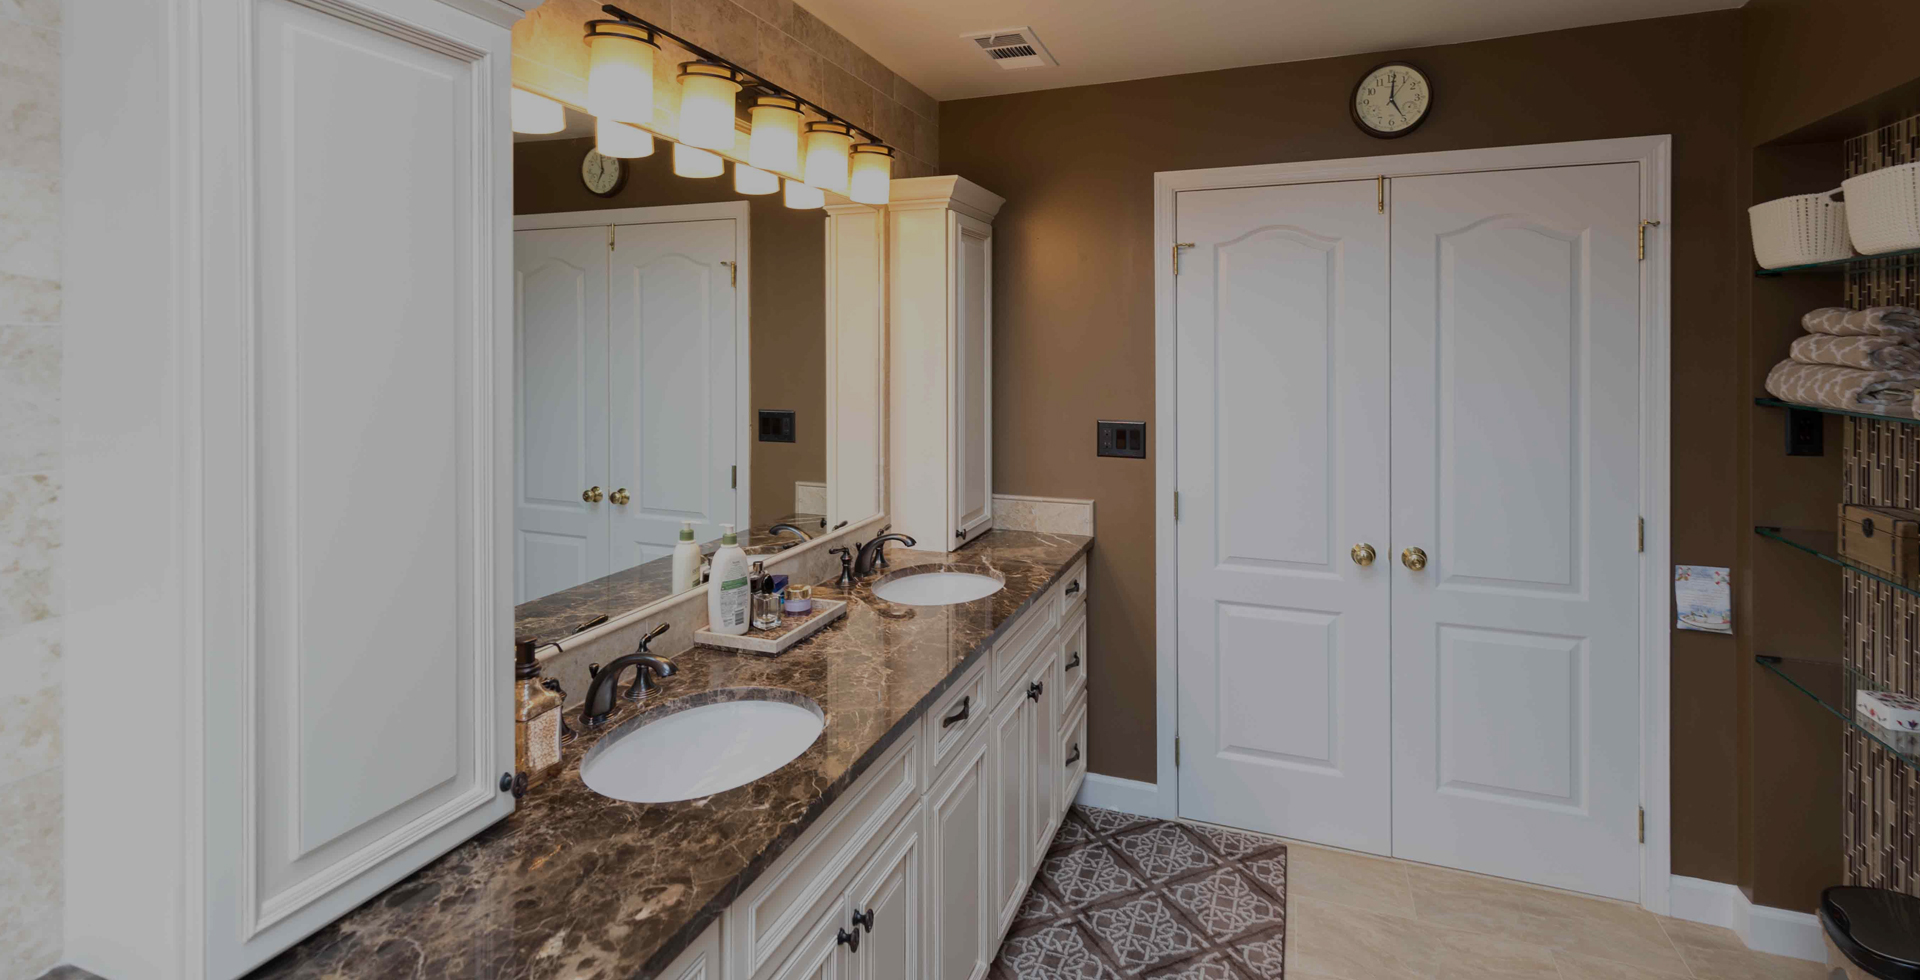 Bathroom Countertops Vanity Countertops Lake Worth Fl Max Granite